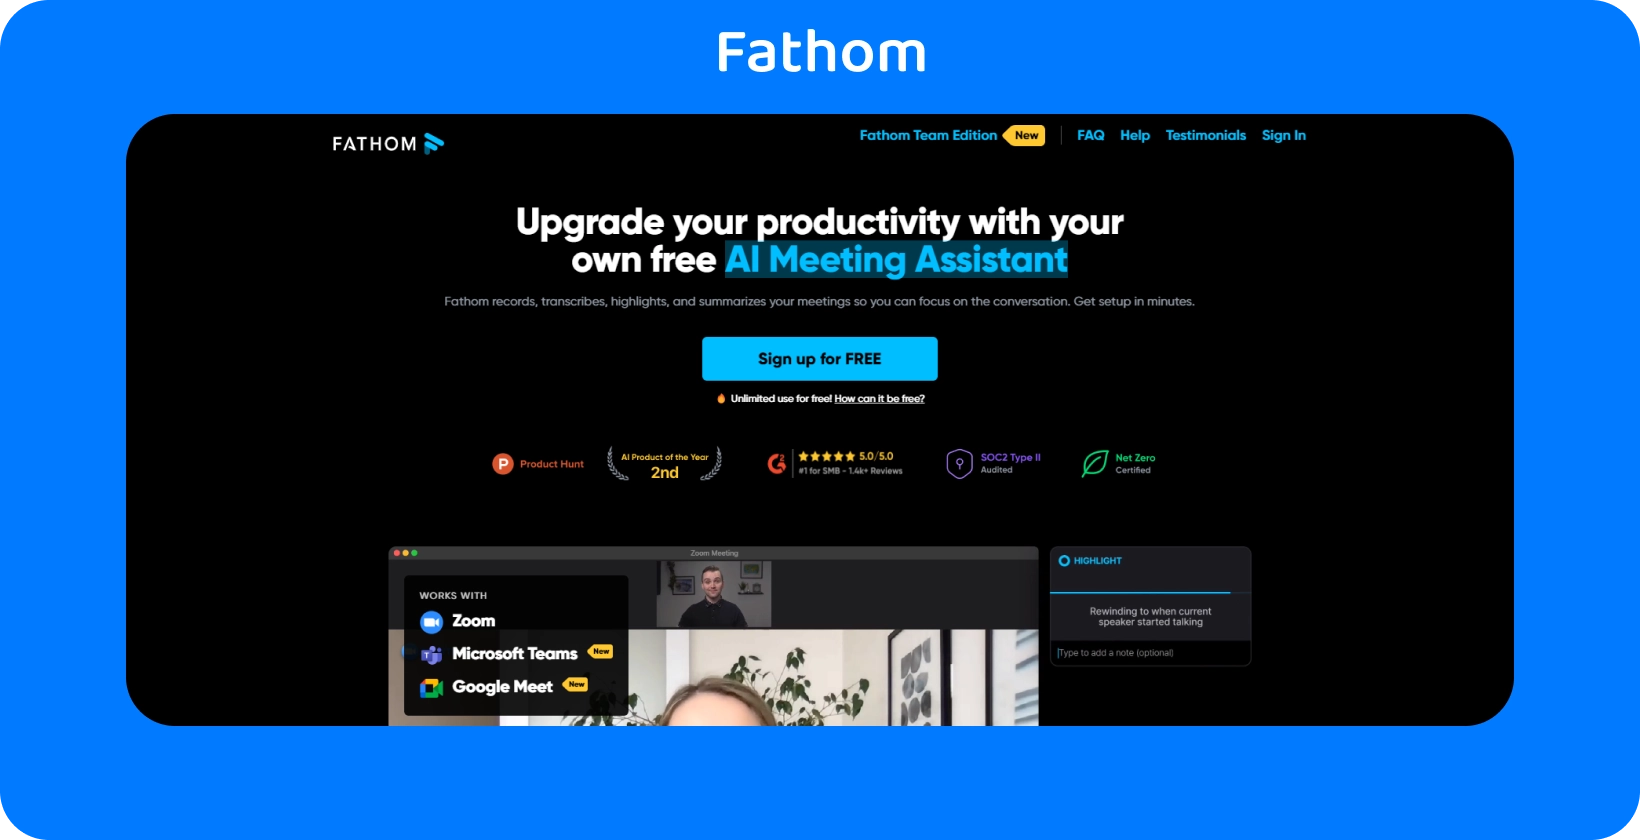 Η ιστοσελίδα της Fathom εμφανίζει τον AI Meeting Assistant για βελτιωμένη παραγωγικότητα μέσω υπηρεσιών καταγραφής και μεταγραφής.